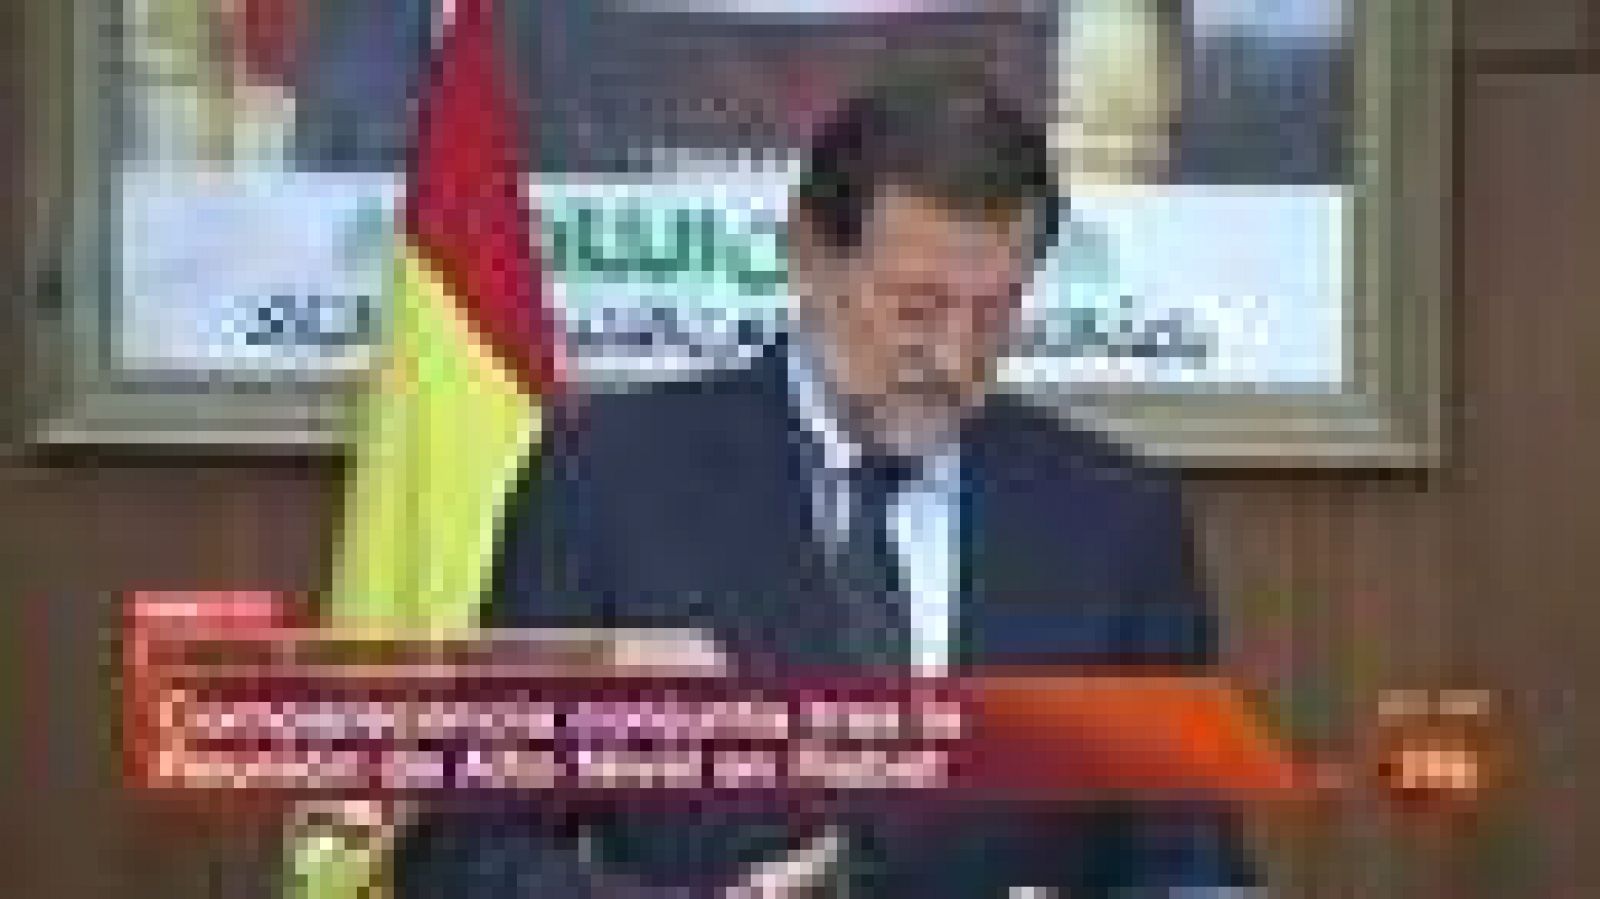 El presidente del Gobierno español, Mariano Rajoy, ha advertido hoy a la Unión Europea de que, ante la situación económica que atraviesa la eurozona, "ha llegado el momento de pasar de los discursos a los hechos" y cumplir los acuerdos a los que llegan los líderes de los Veintisiete.